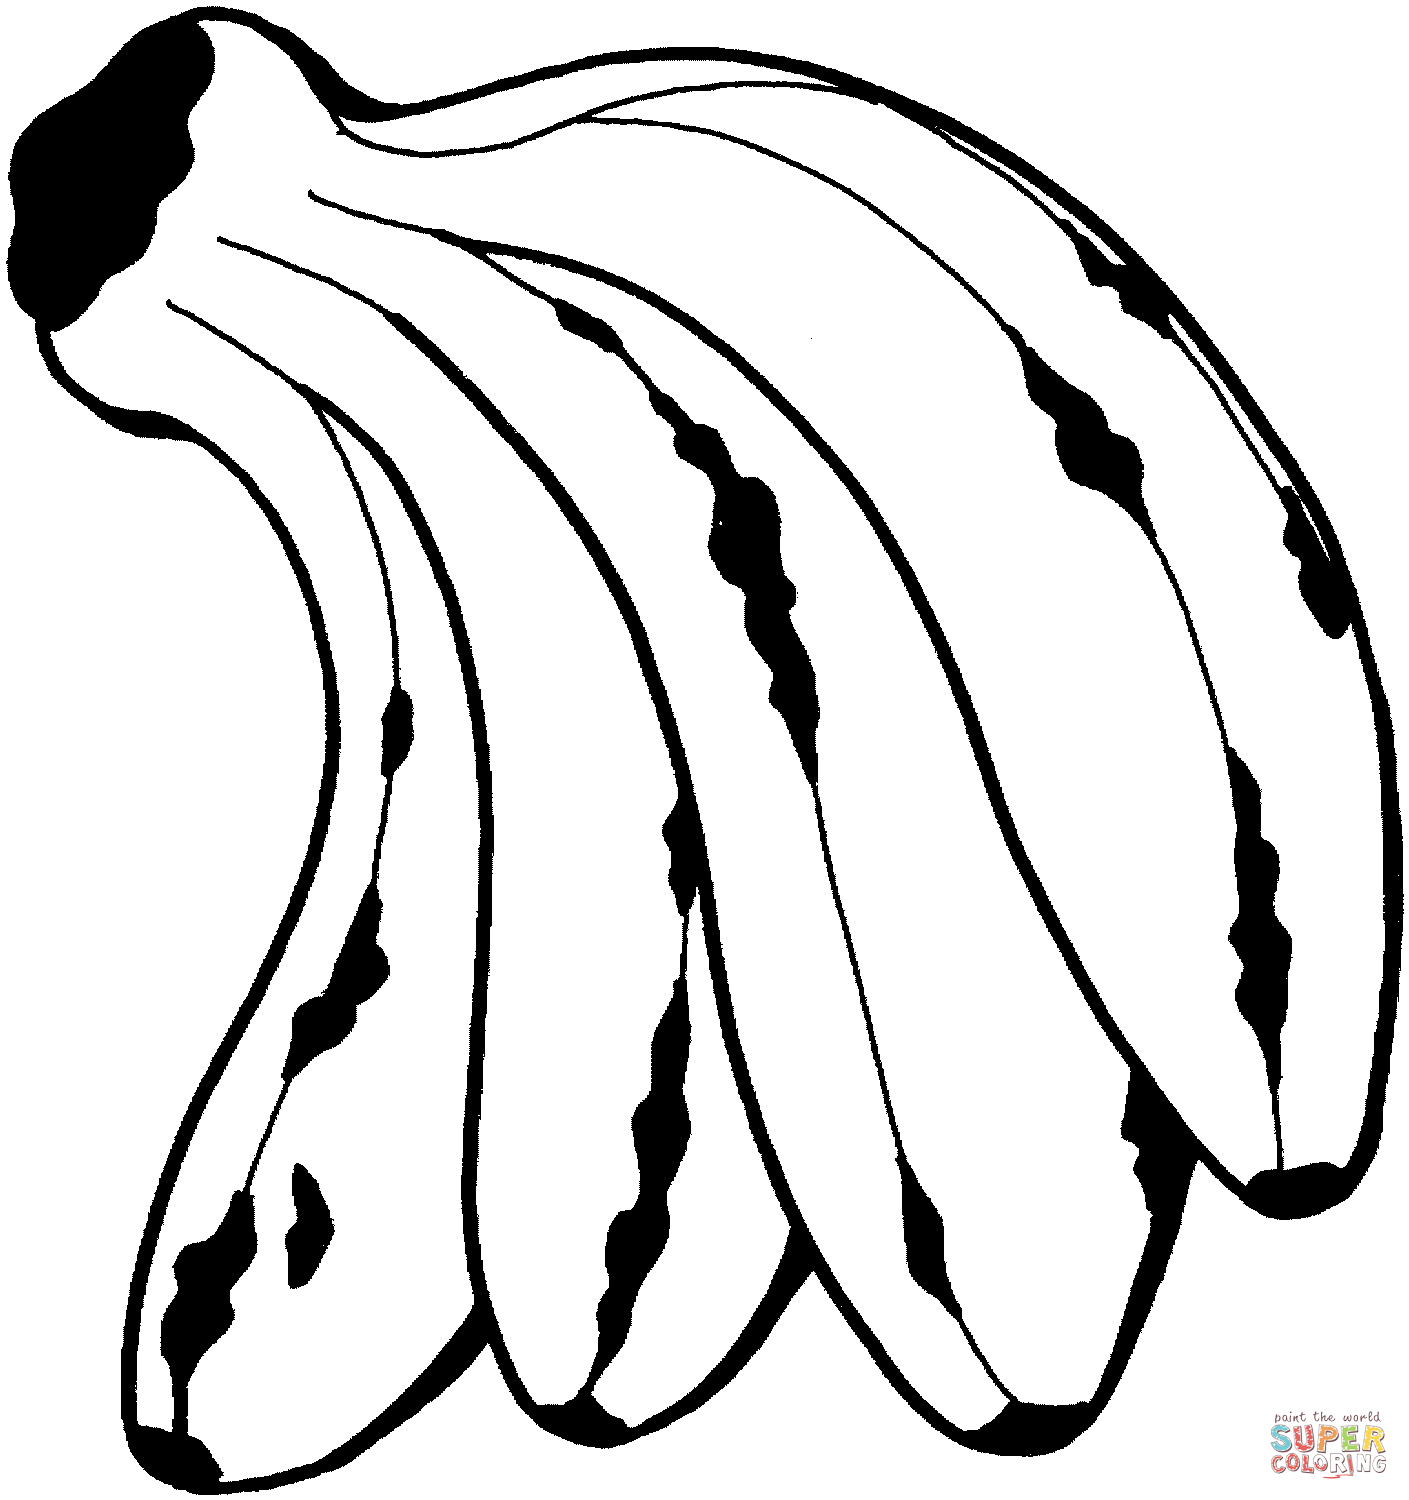 banana-template-clipart-best